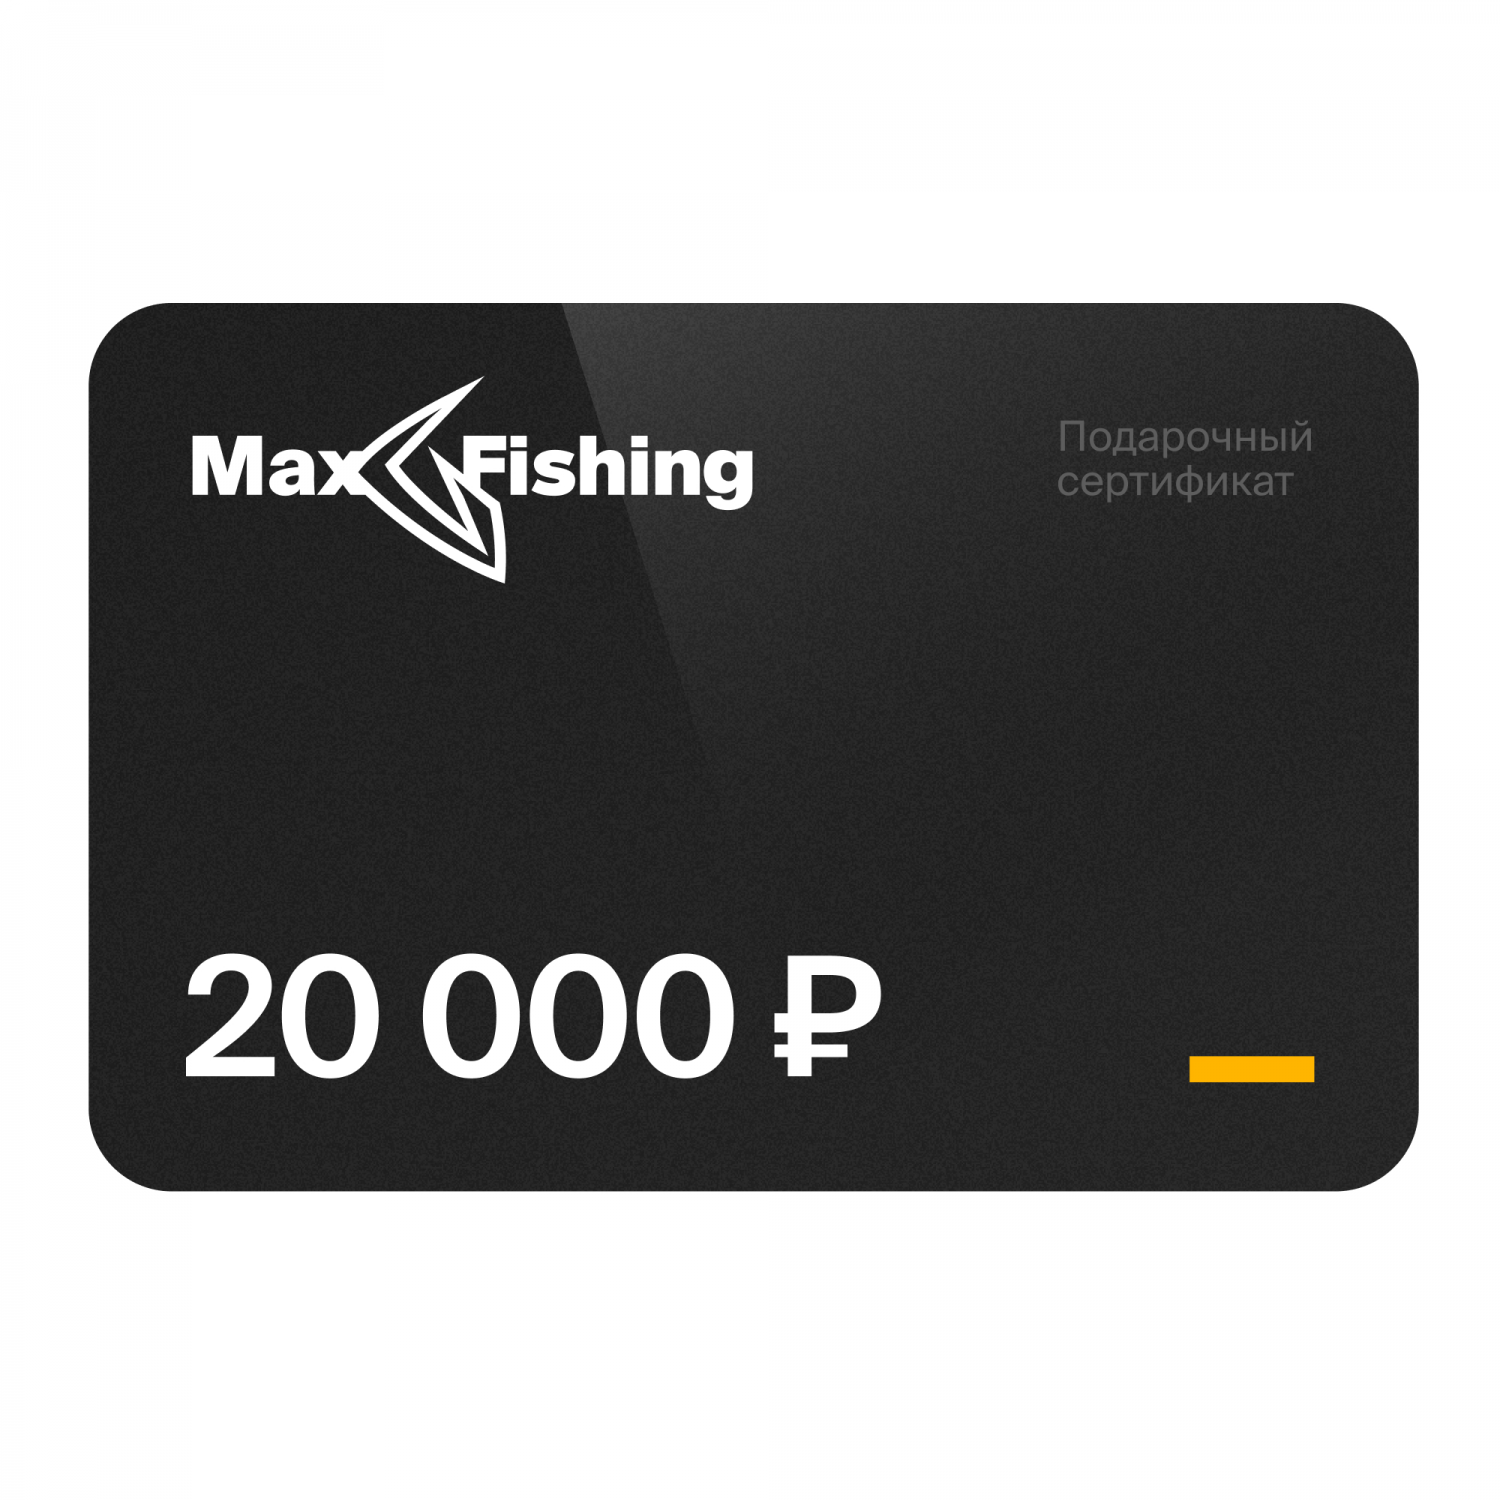 Подарочный сертификат MaxFishing 20 000 ₽ подарочный сертификат maxfishing 20